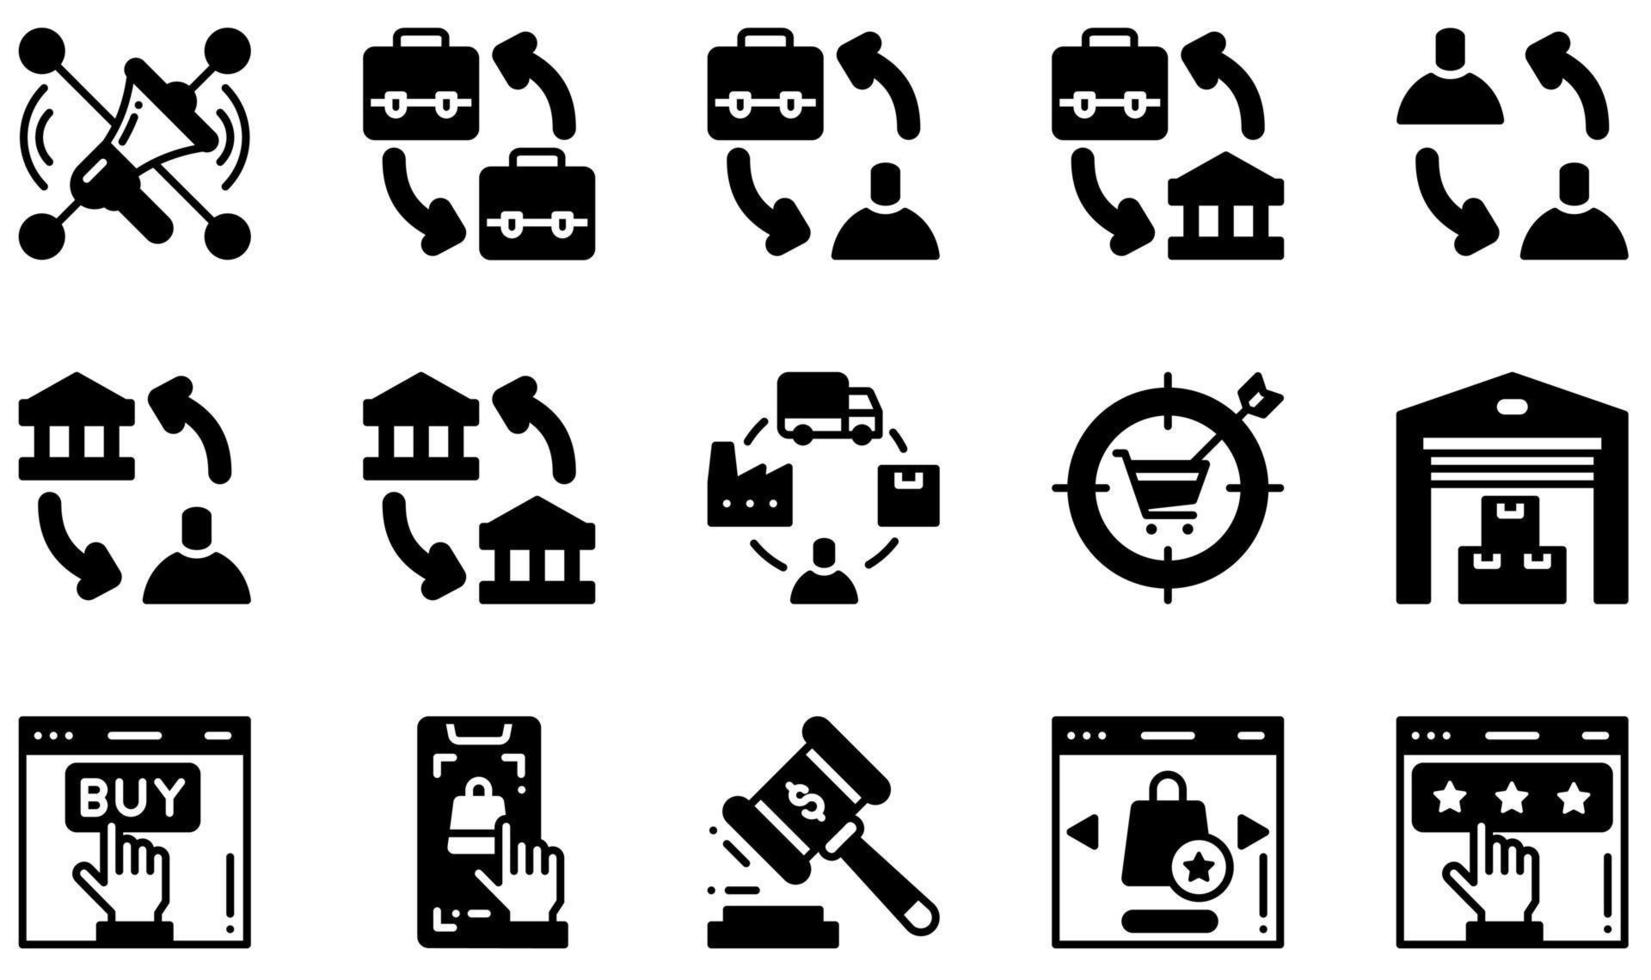 set di icone vettoriali relative all'e-commerce. contiene icone come socialmarketing, b2b, b2c, supply chain, magazzino, qualità e altro ancora.